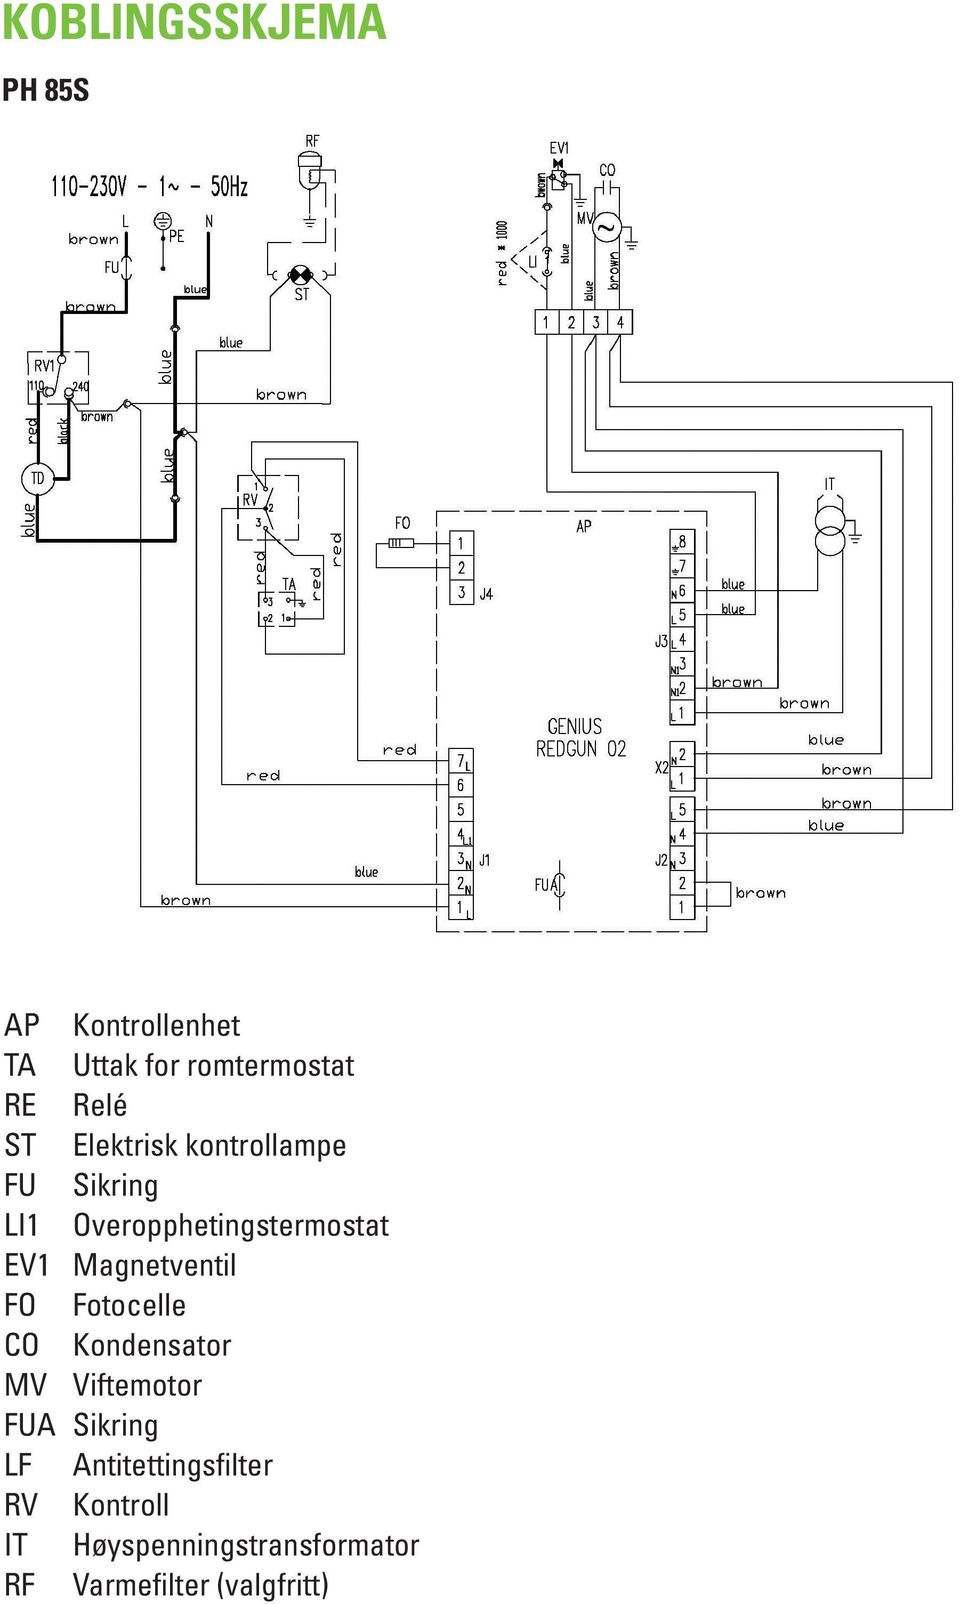 Magnetventil FO Fotocelle CO Kondensator MV Viftemotor FUA Sikring LF